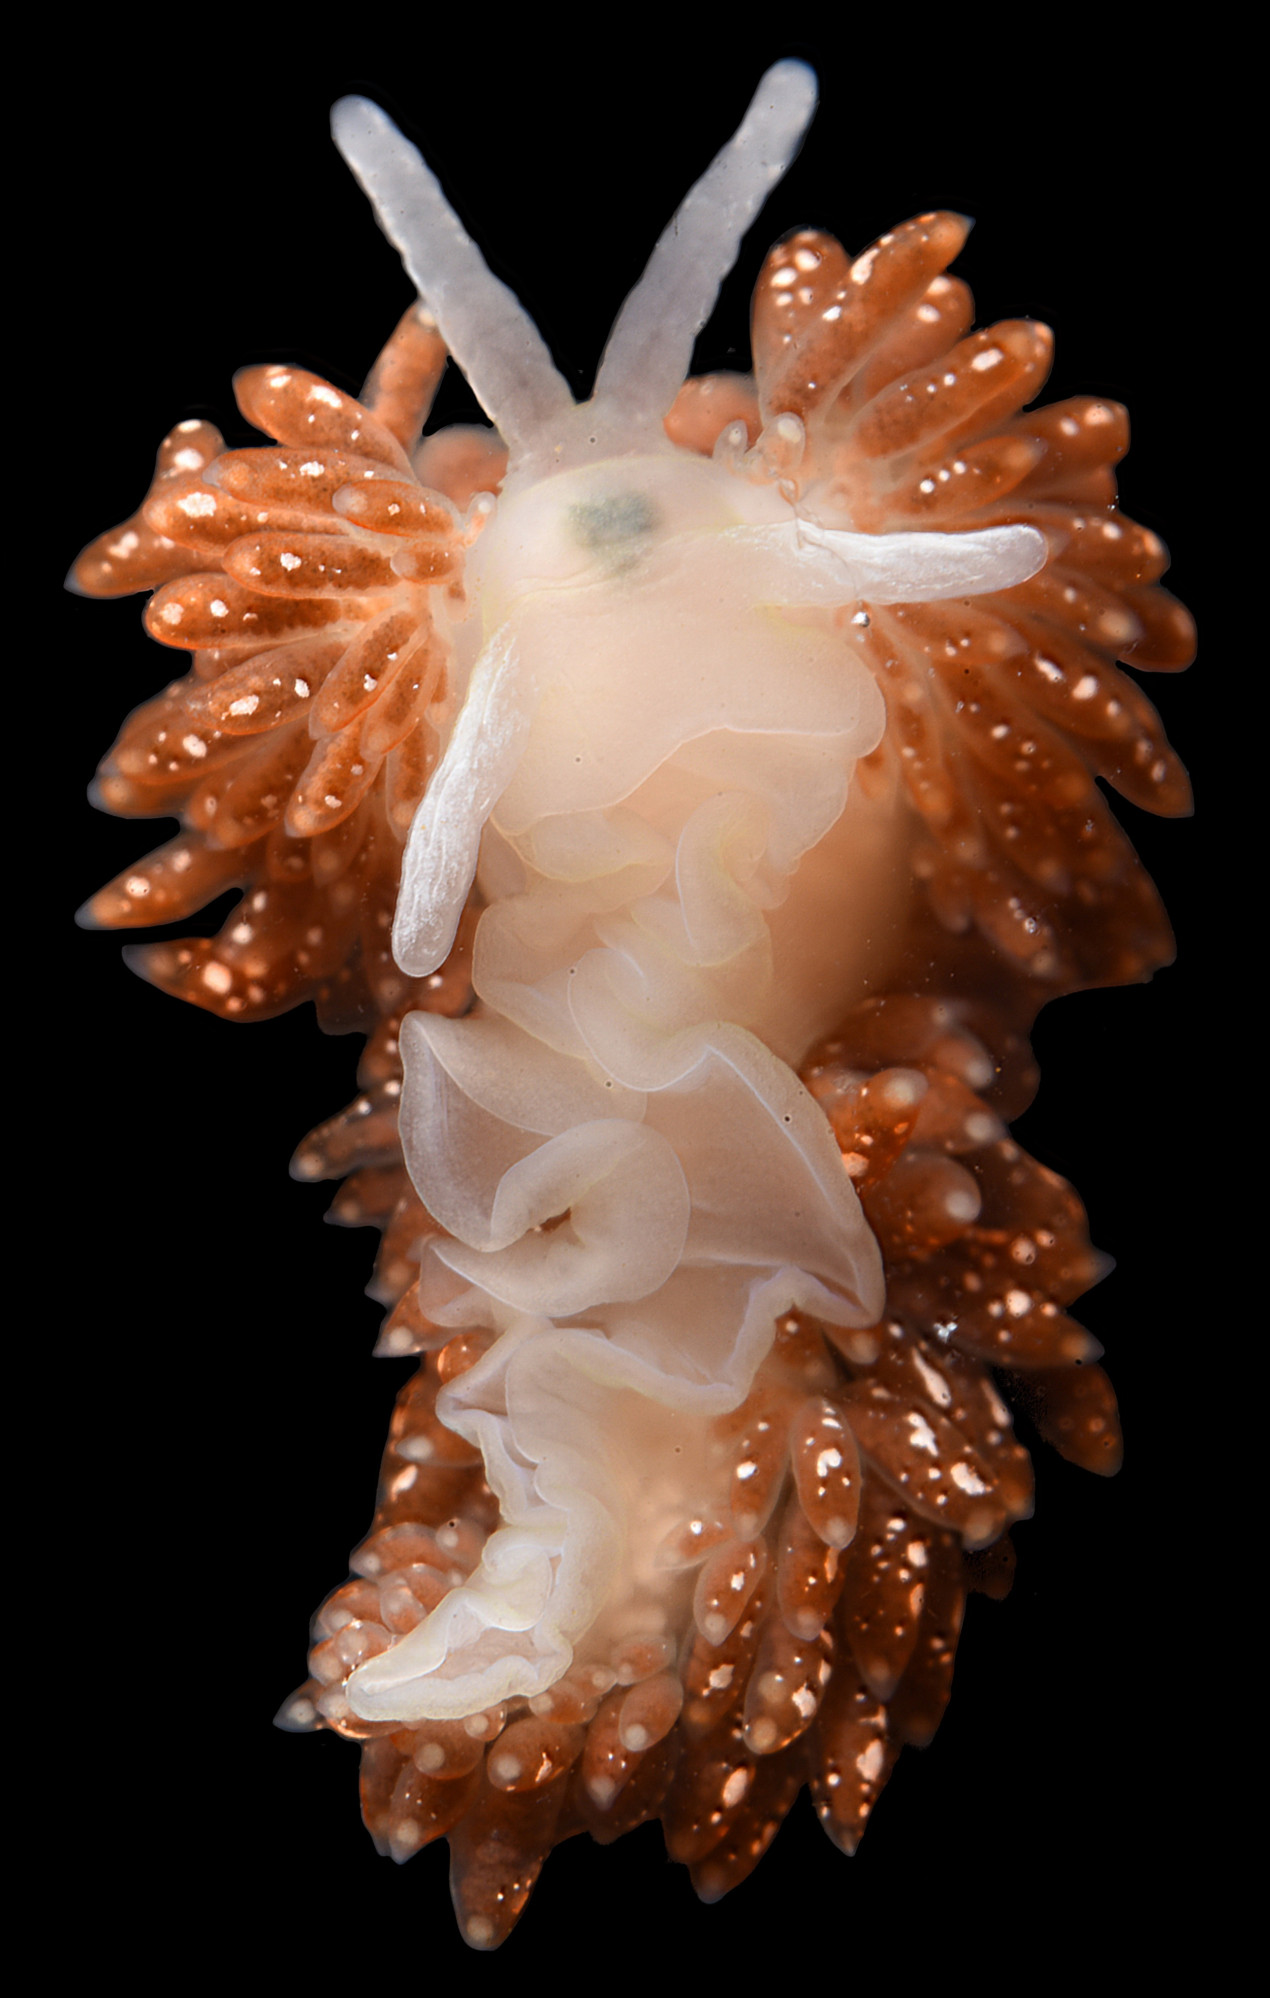 Голожаберный моллюск Diaphoreolis zvezda. Фото: Татьяна Коршунова и Александр Мартынов